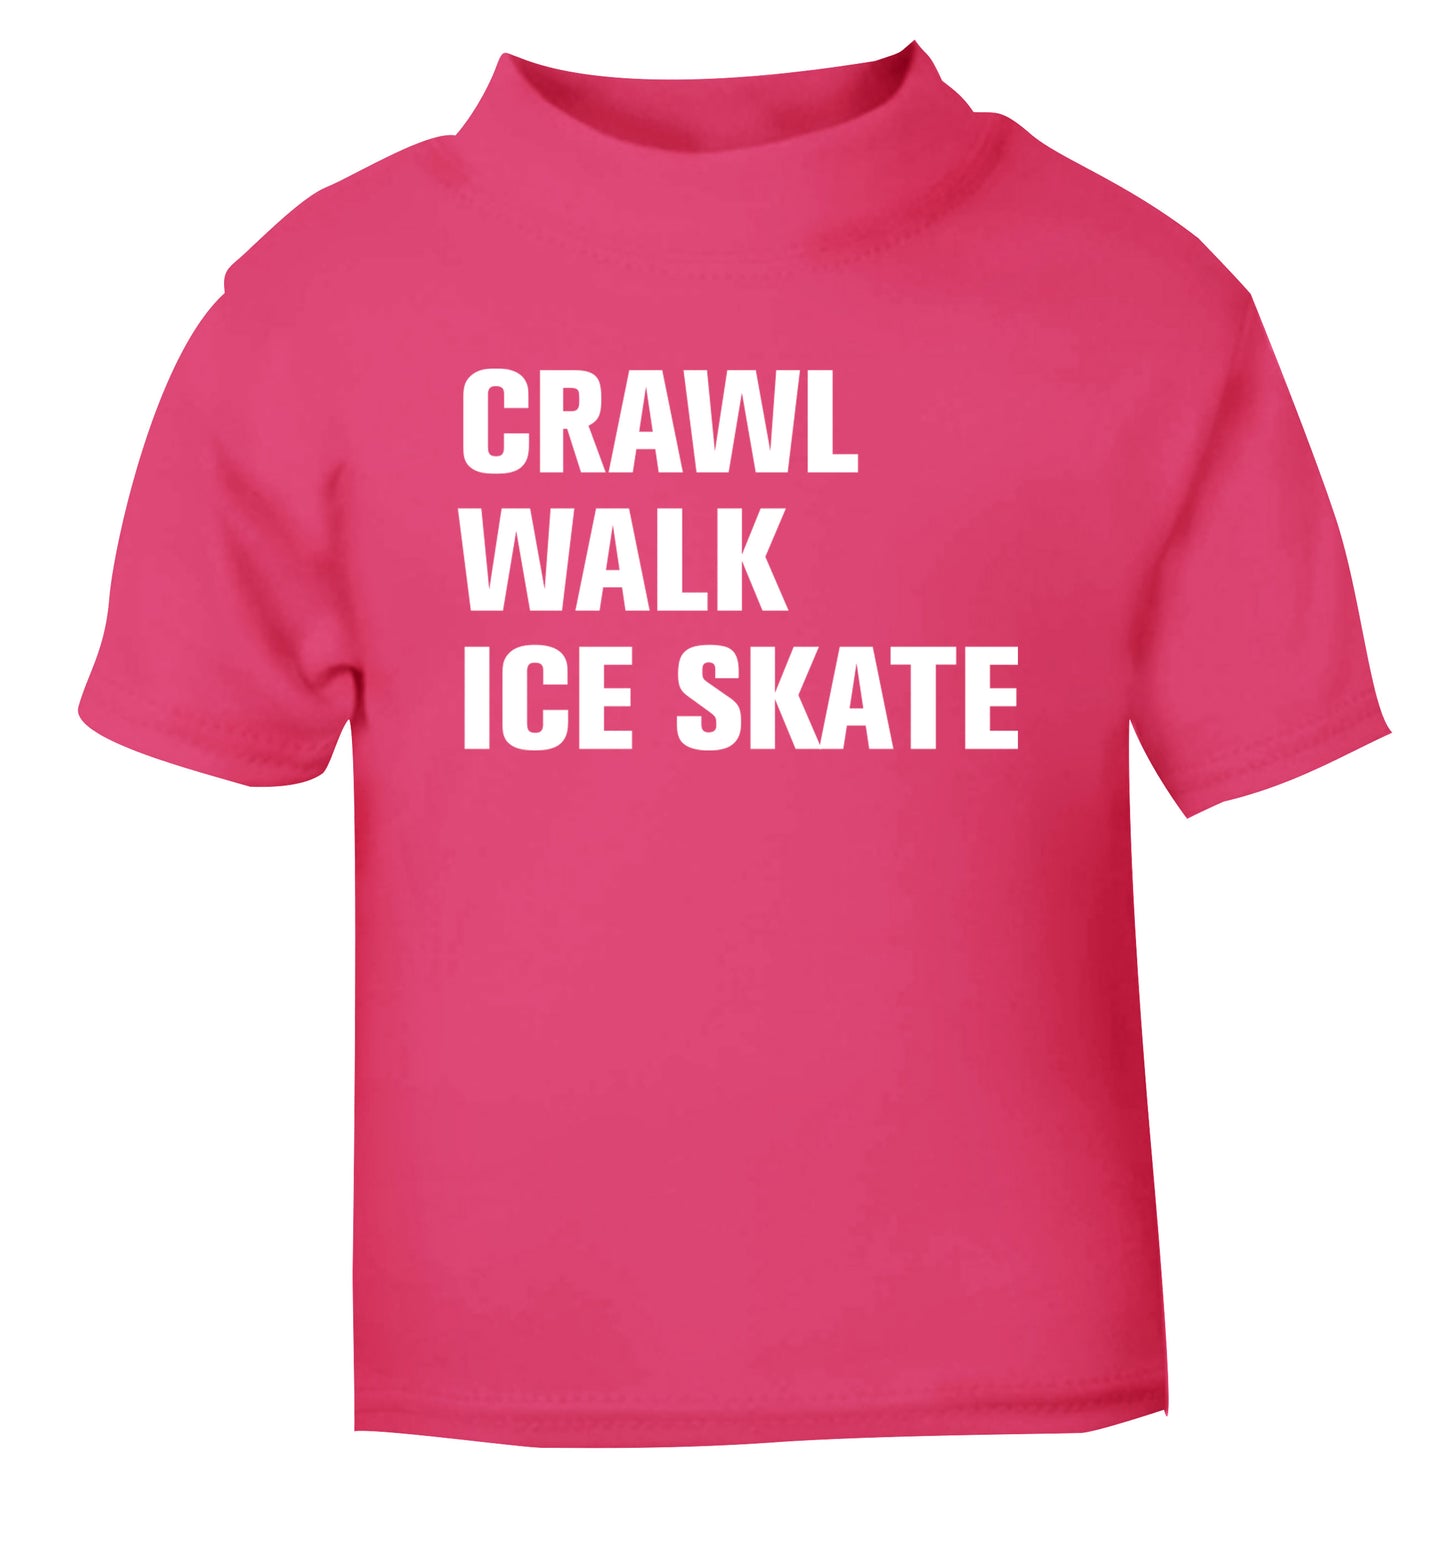 Crawl walk ice skate pink Baby Toddler Tshirt 2 Years